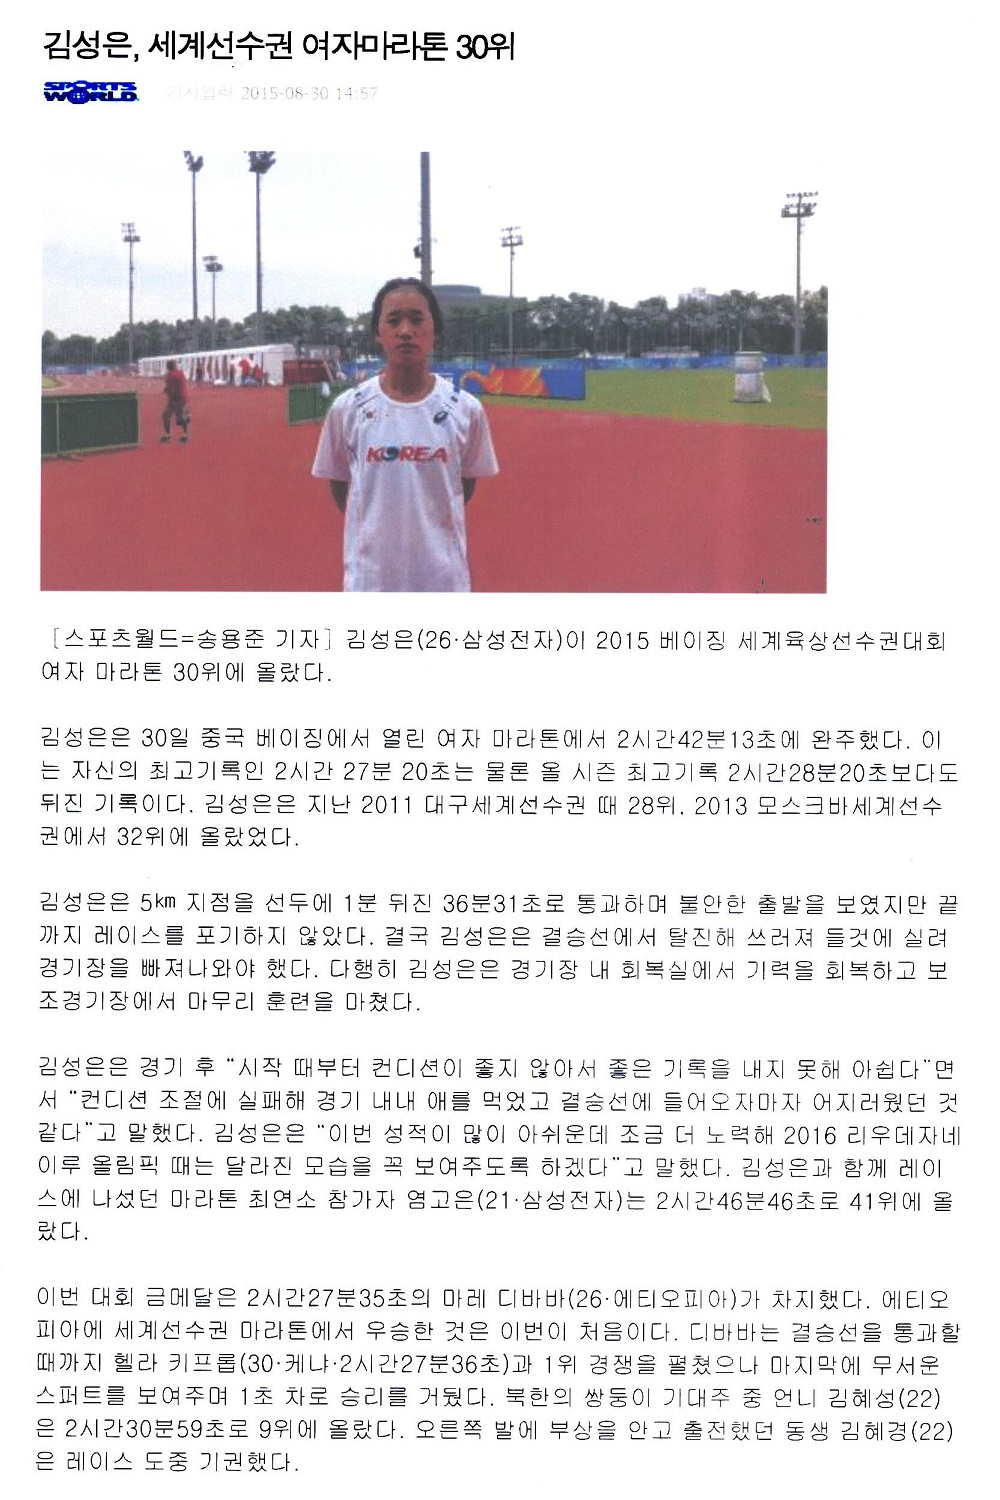 김성은, 세계선수권 여자마라톤 30위